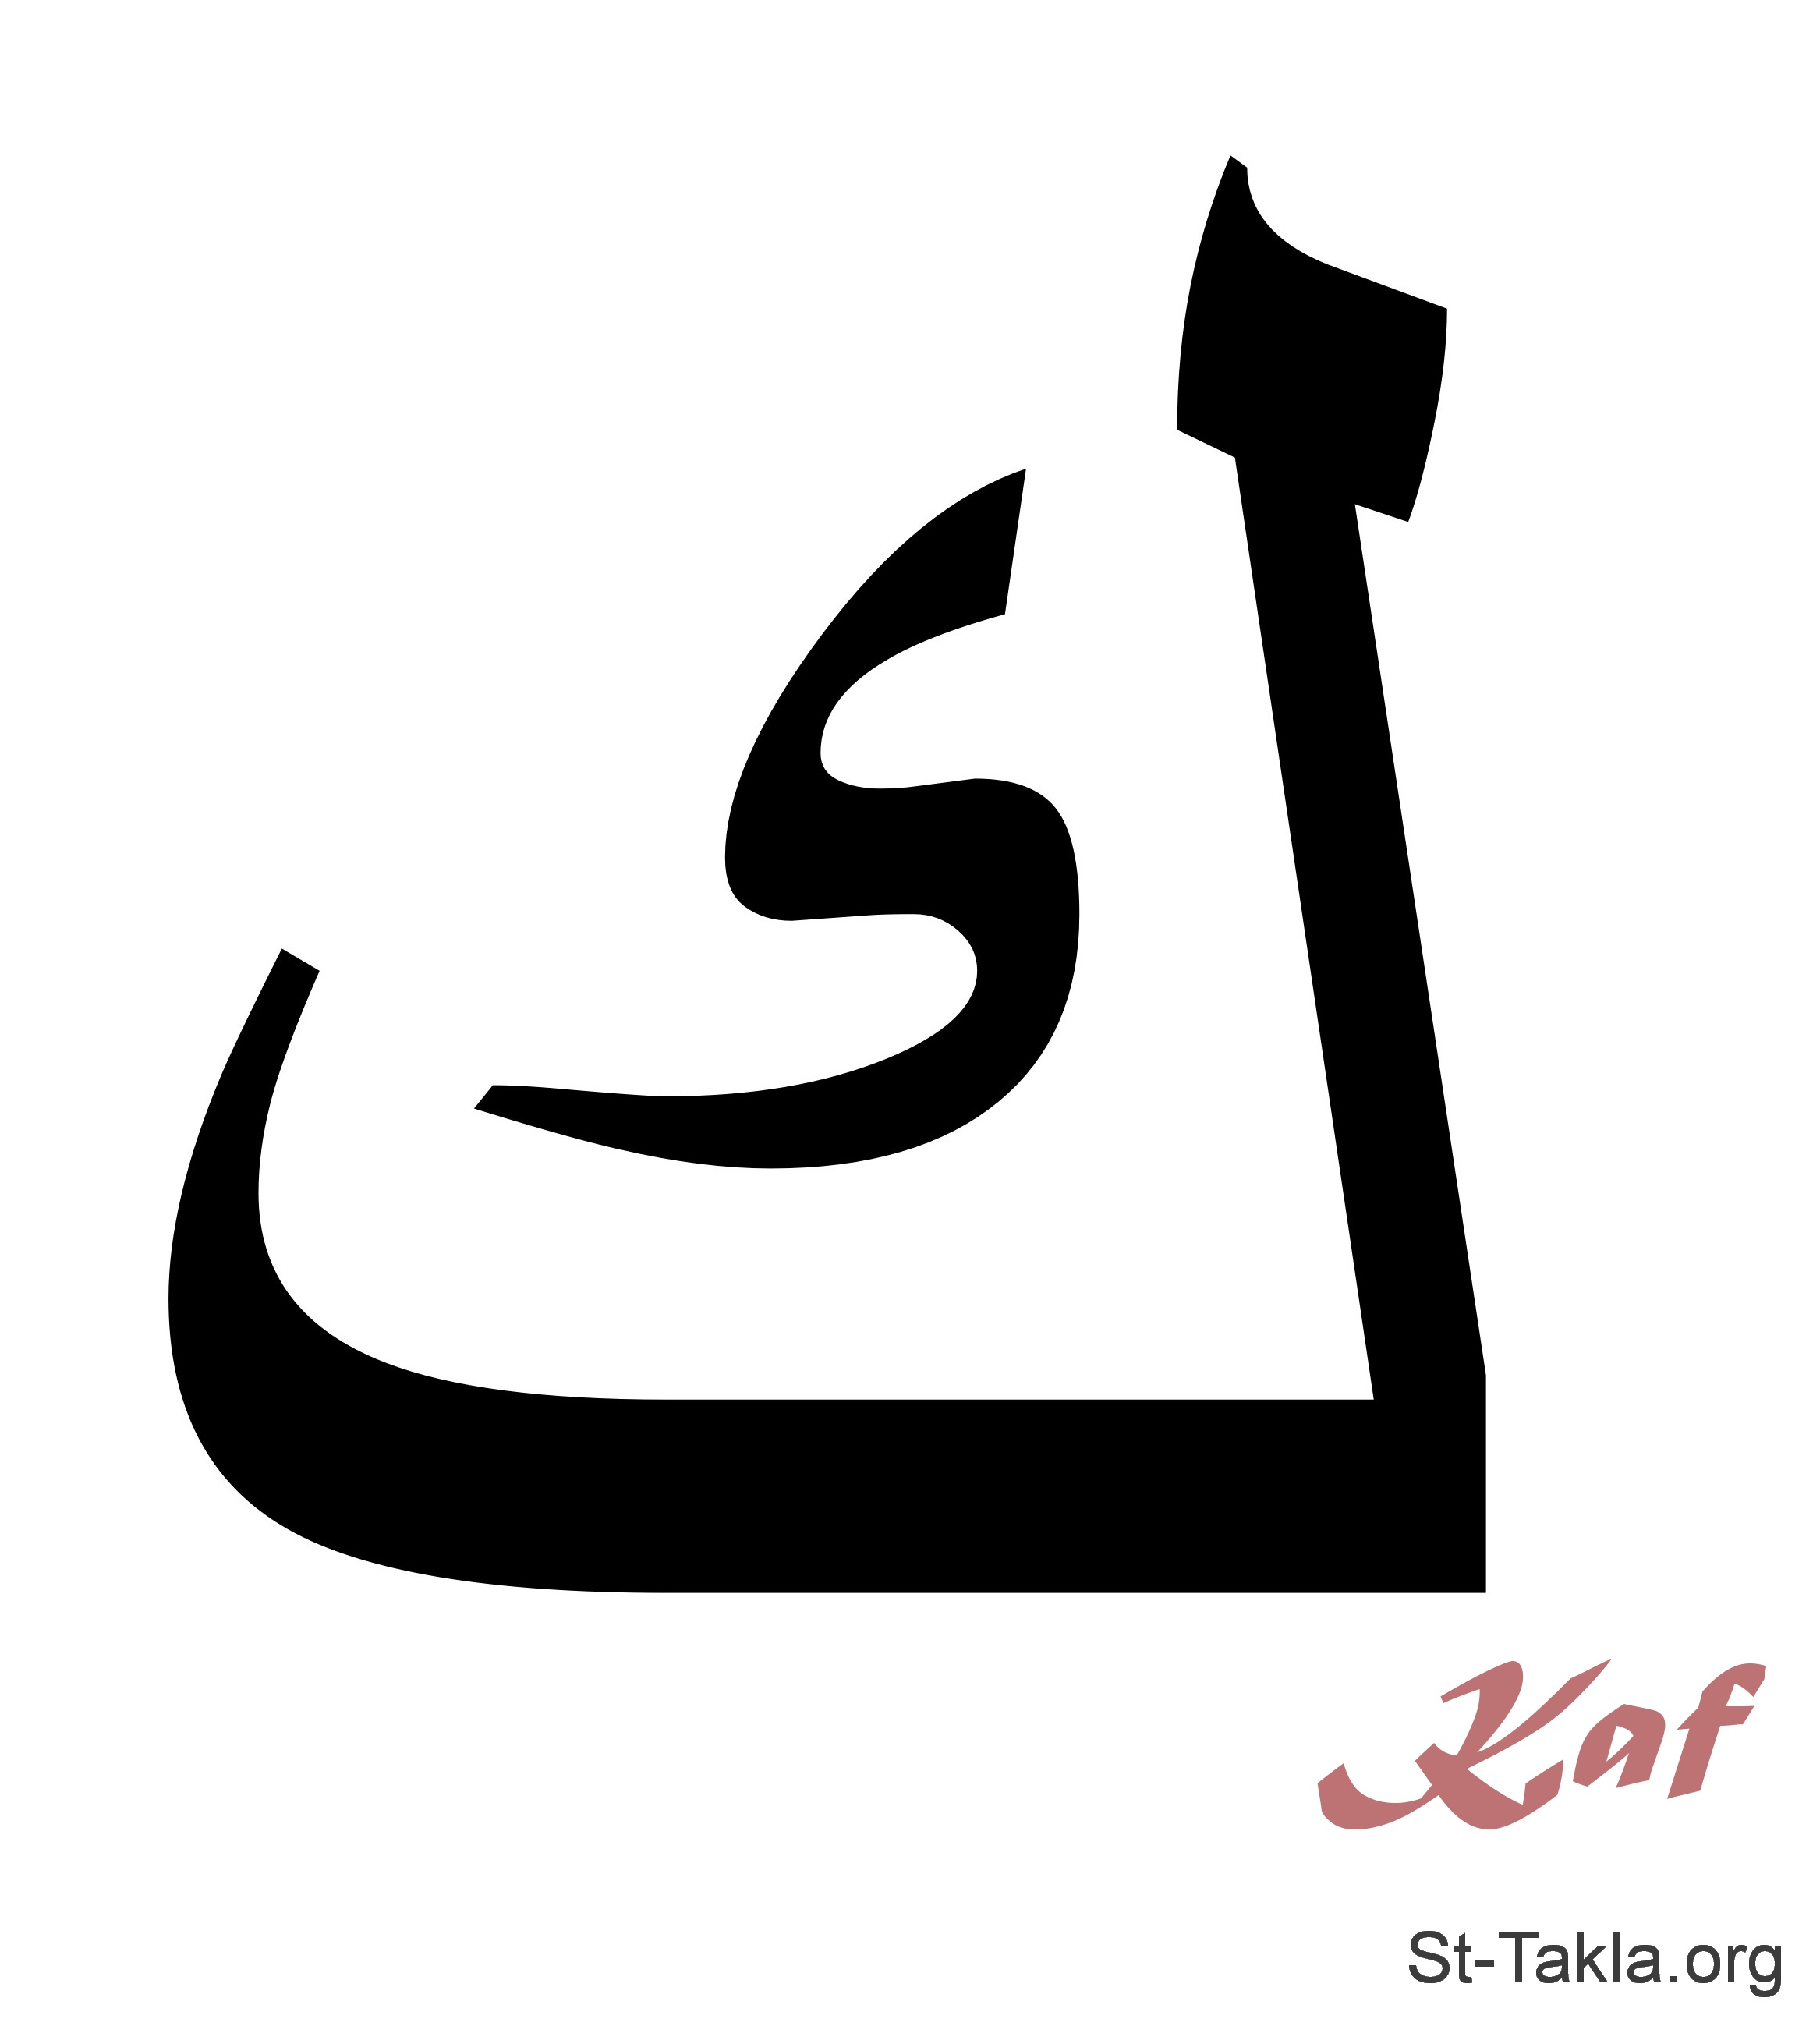 Арабская буква м. Арабские буквы. Буква Кяф в арабском. Каф (буква арабского алфавита). Арабские буквы по отдельности.